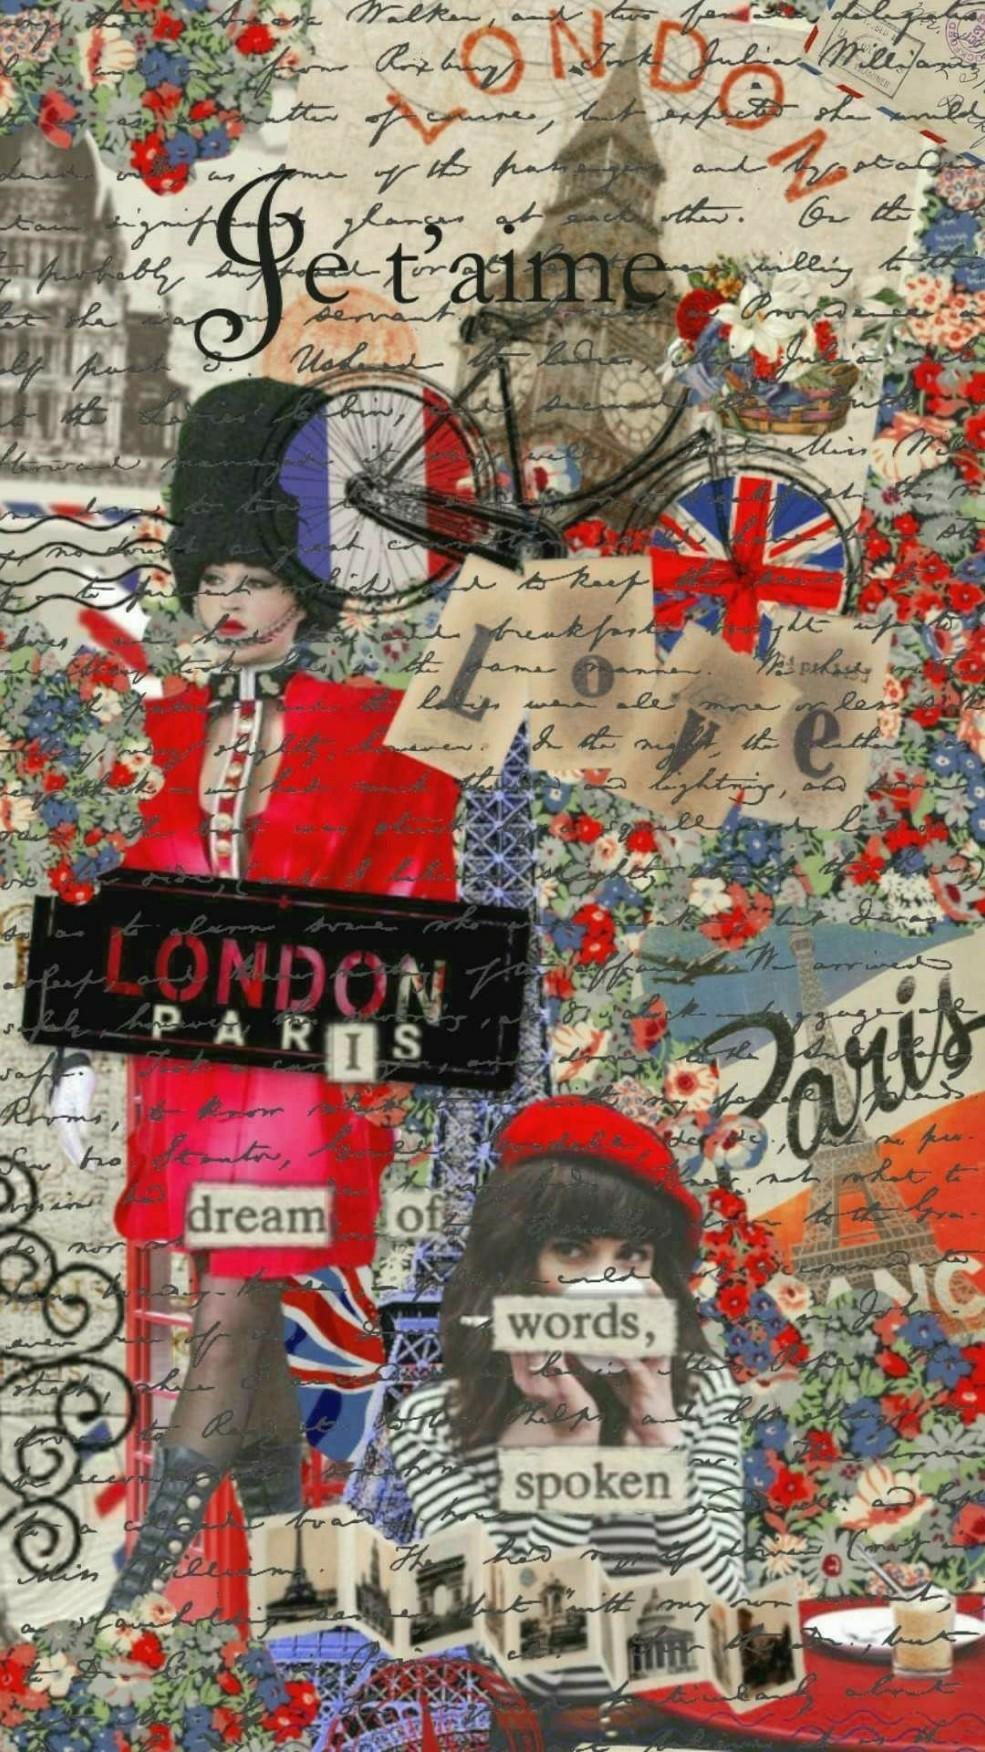 London to Paris mailing letters